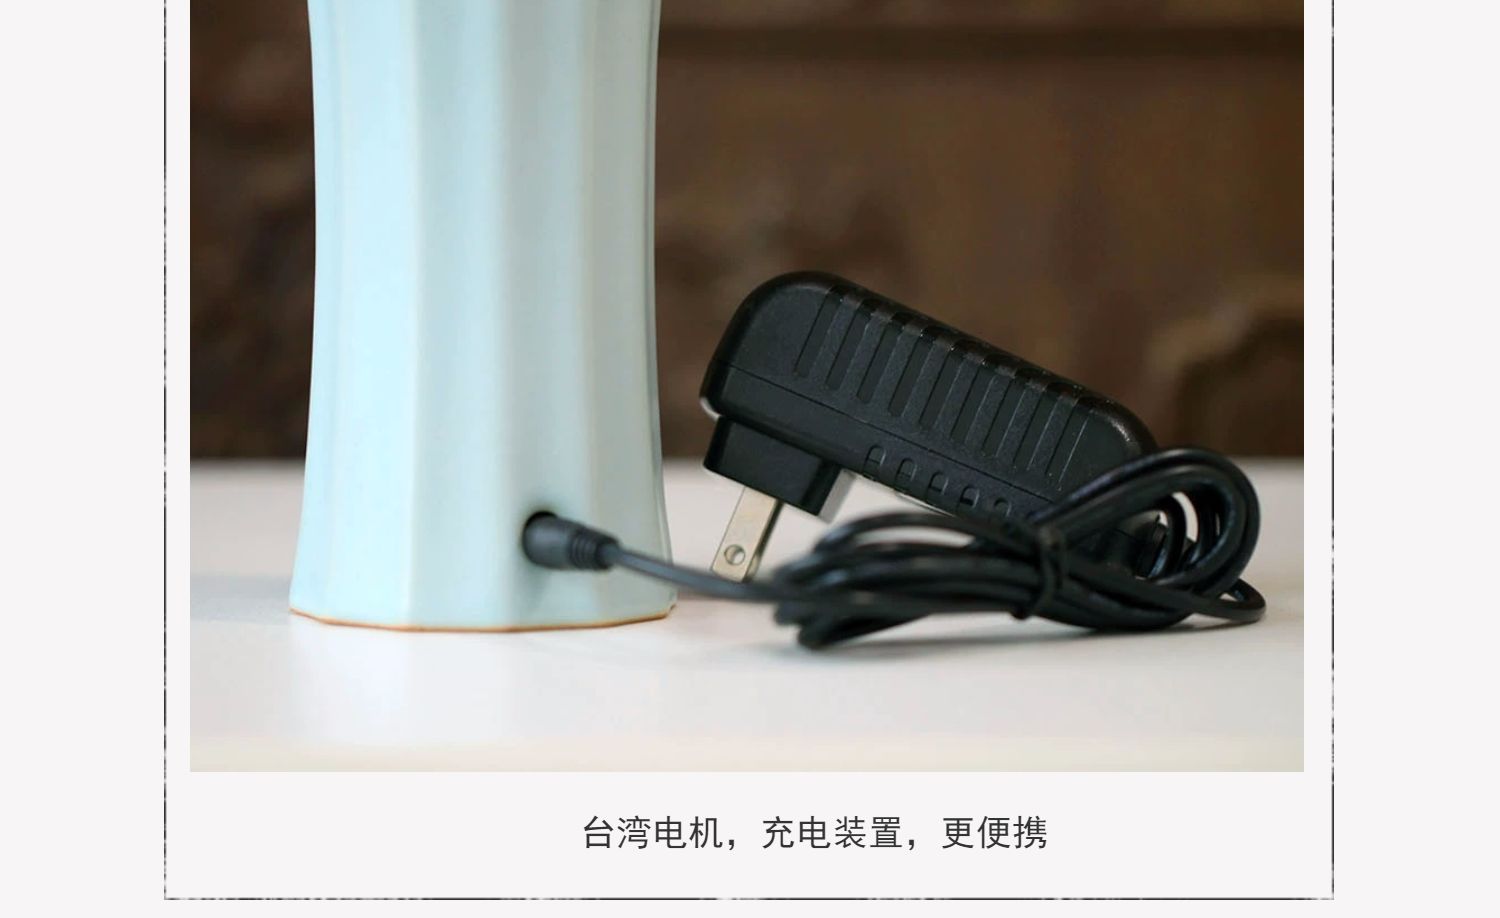 名称：台湾绮嘉心第九代手持电香炉(图3)